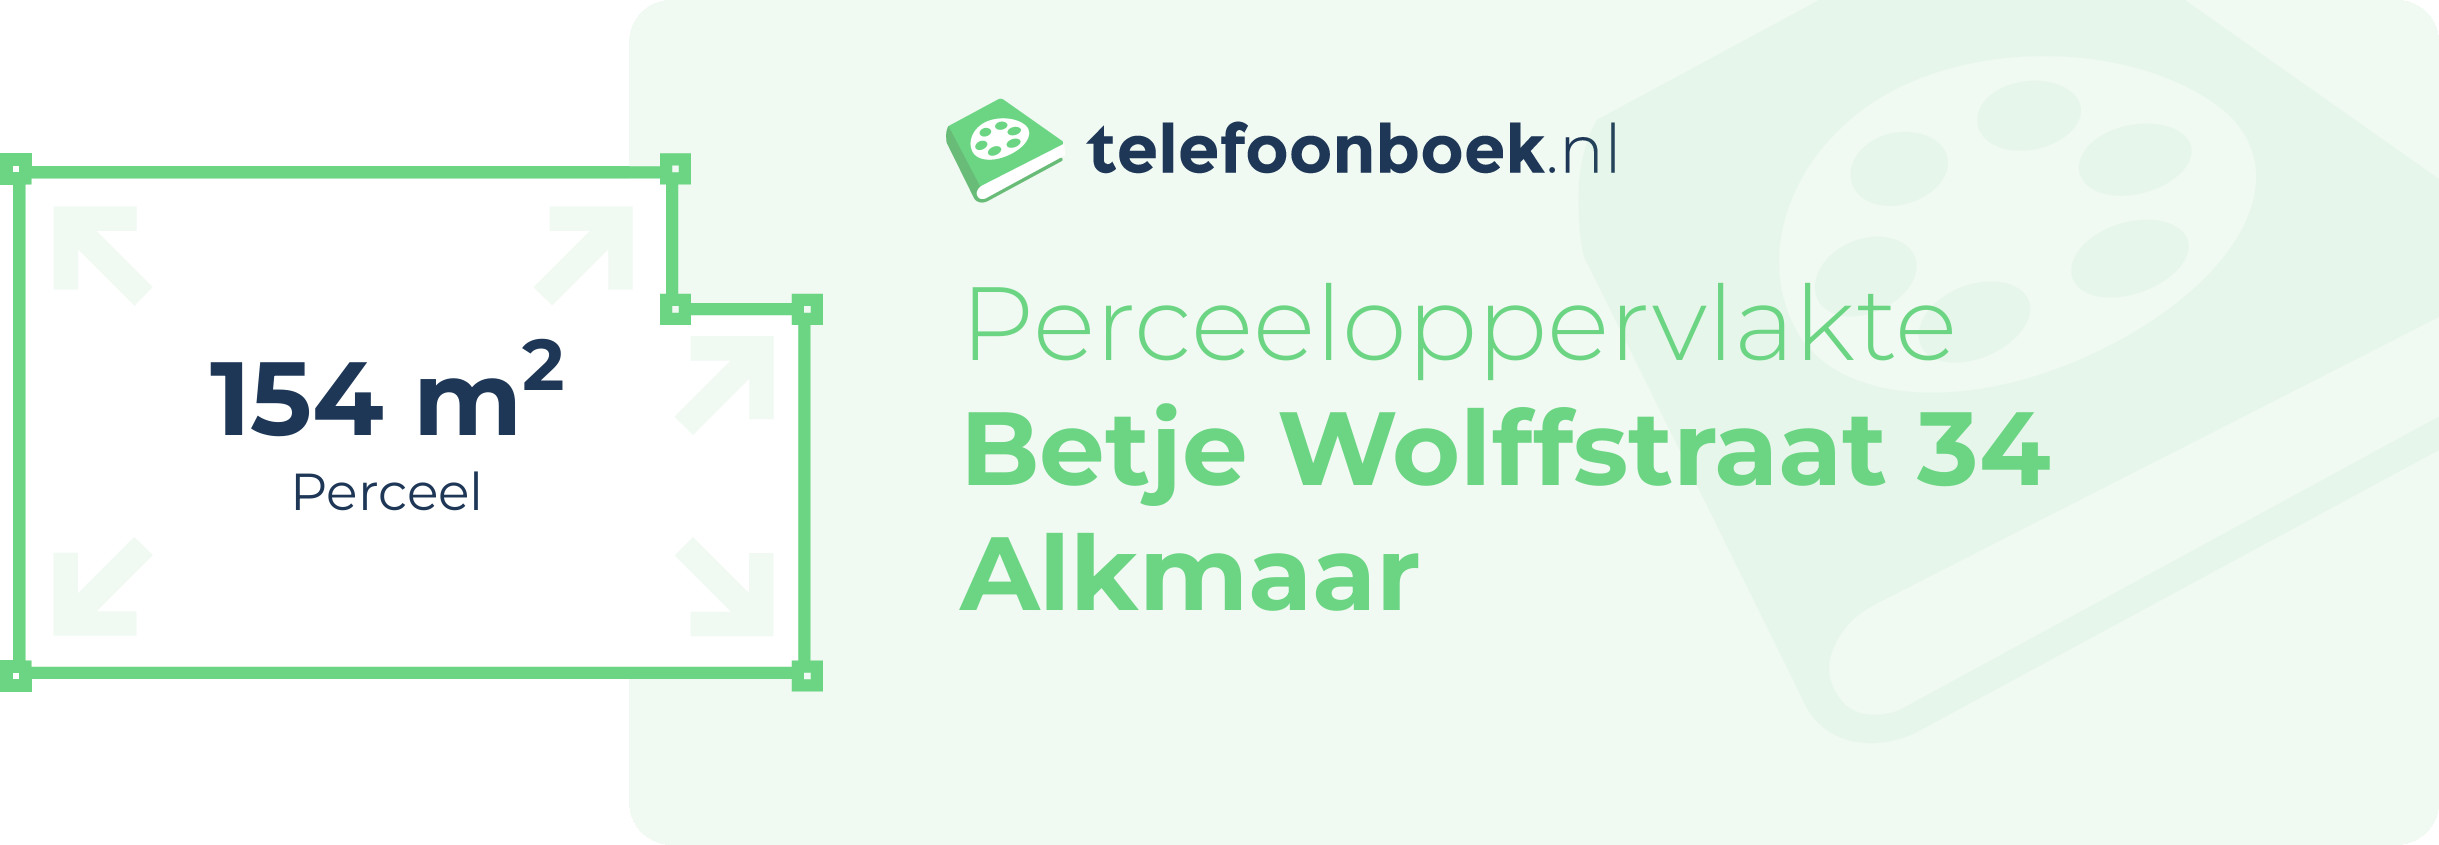 Perceeloppervlakte Betje Wolffstraat 34 Alkmaar